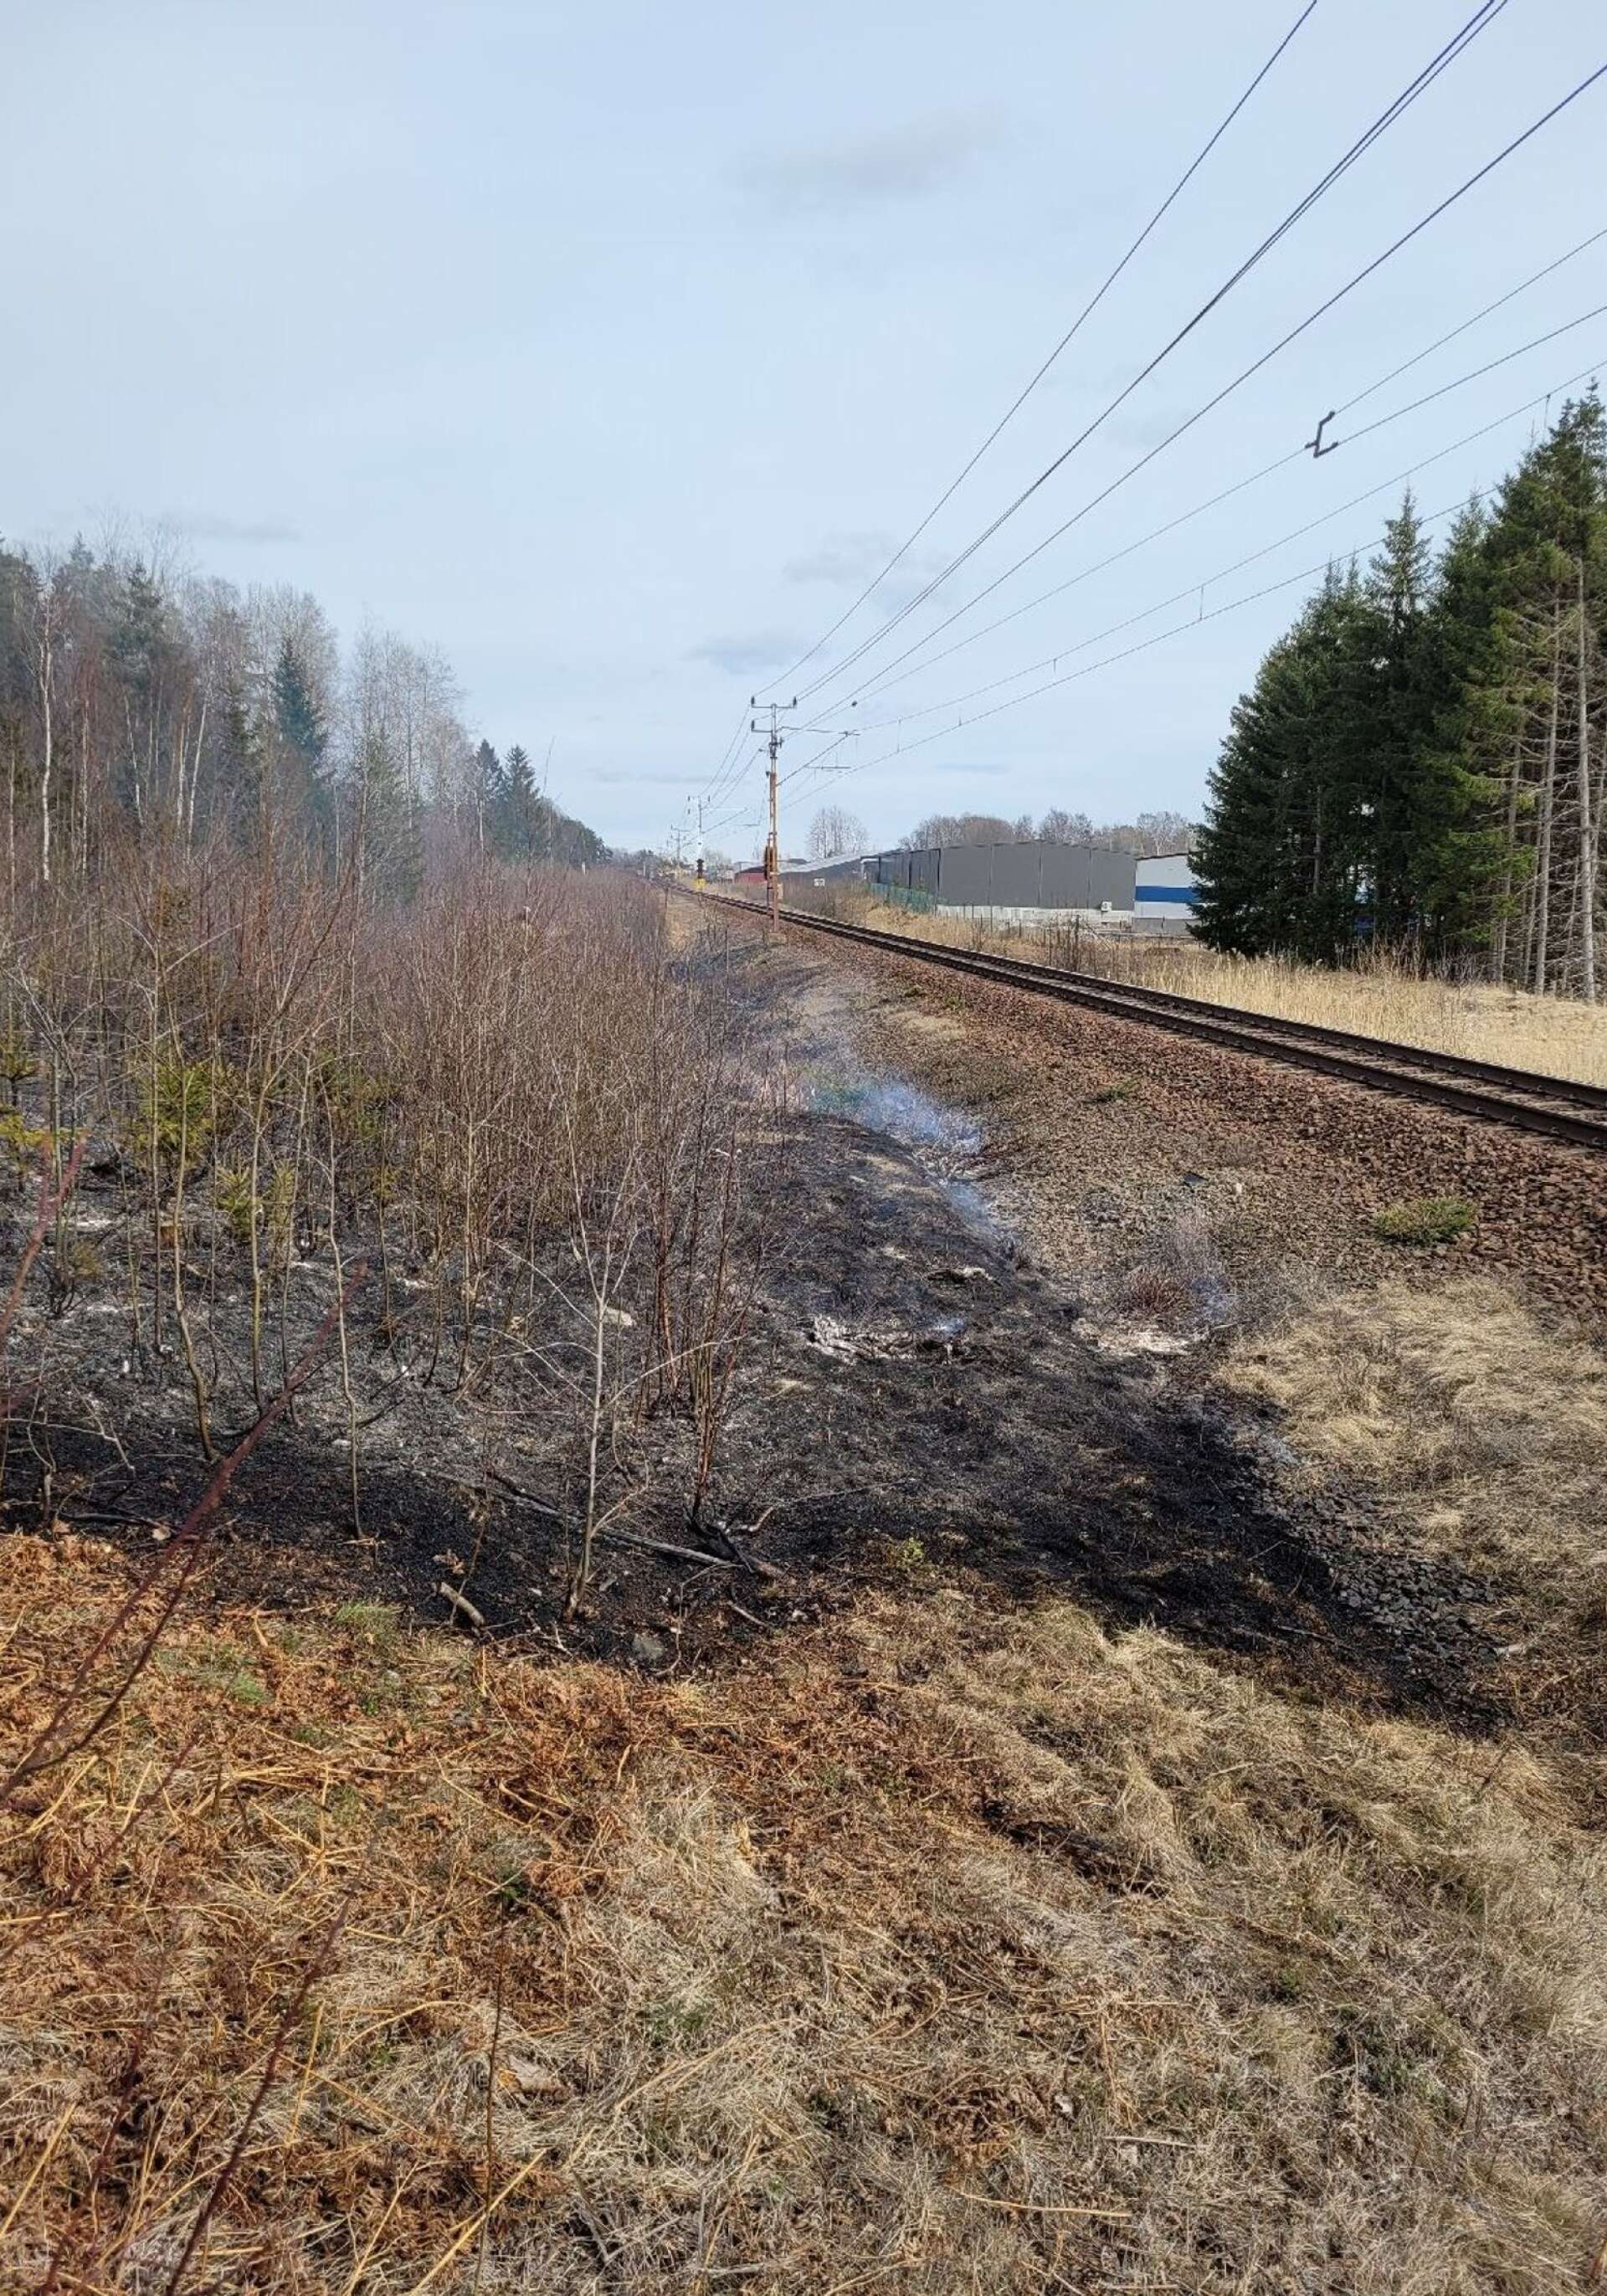 Det brann alldeles intill järnvägsspåret så man kan kanske anta att gnistor från förbipasserande tåg antände gräset.